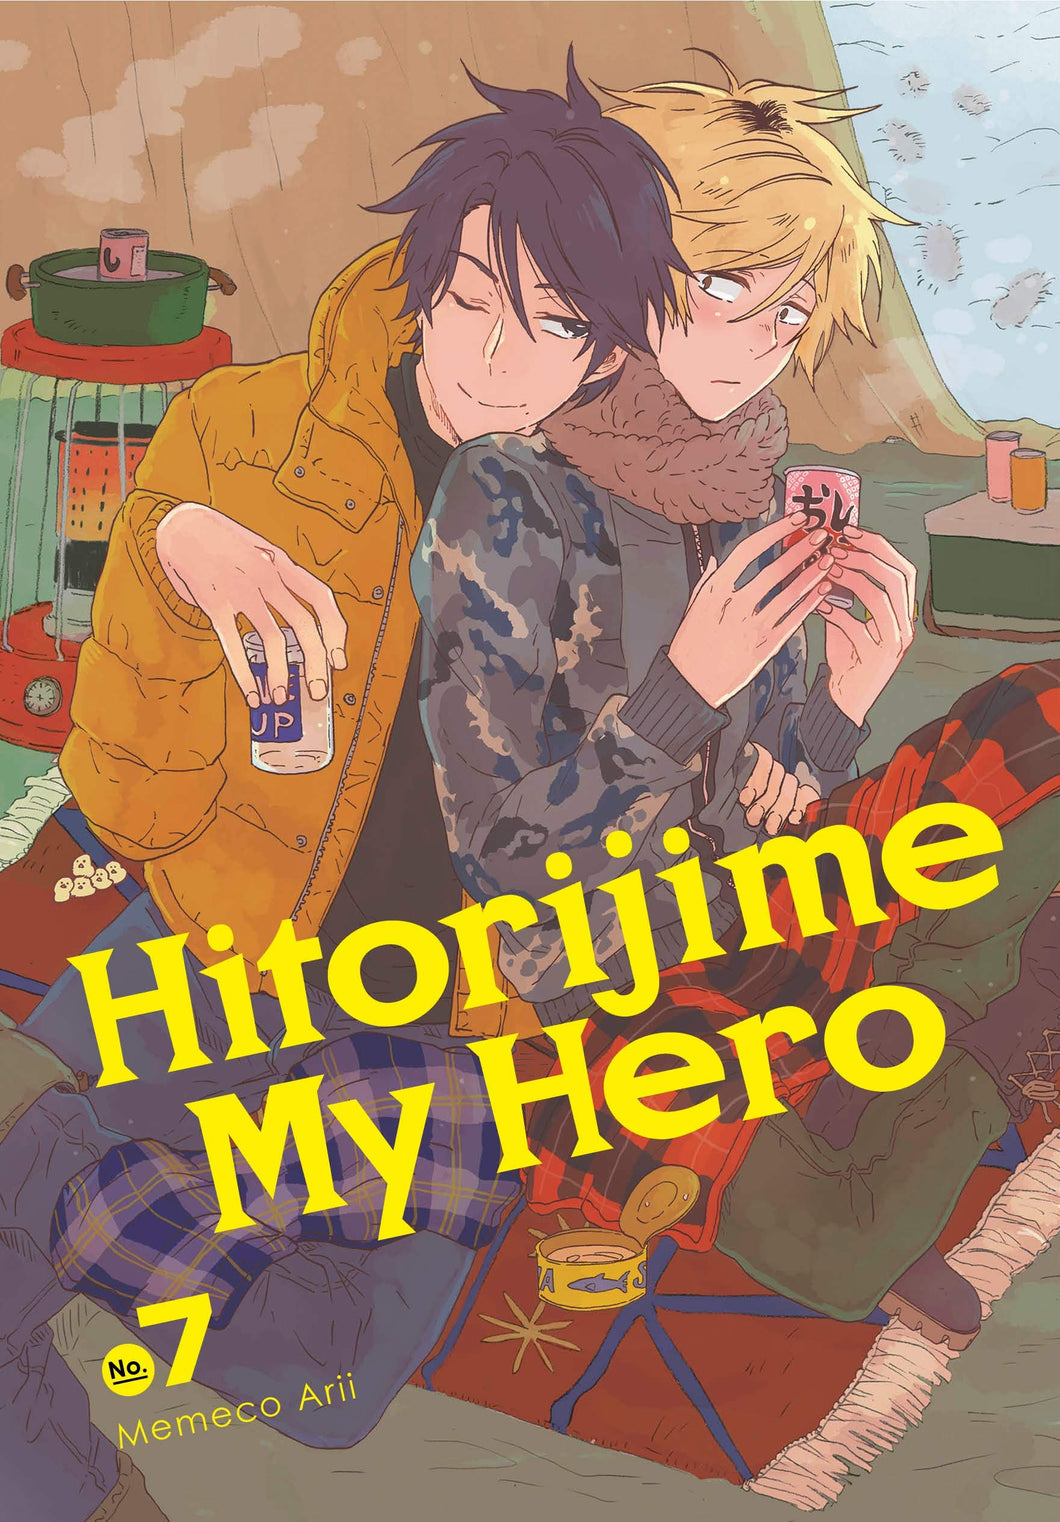 Hitorijime My Hero Volume 7